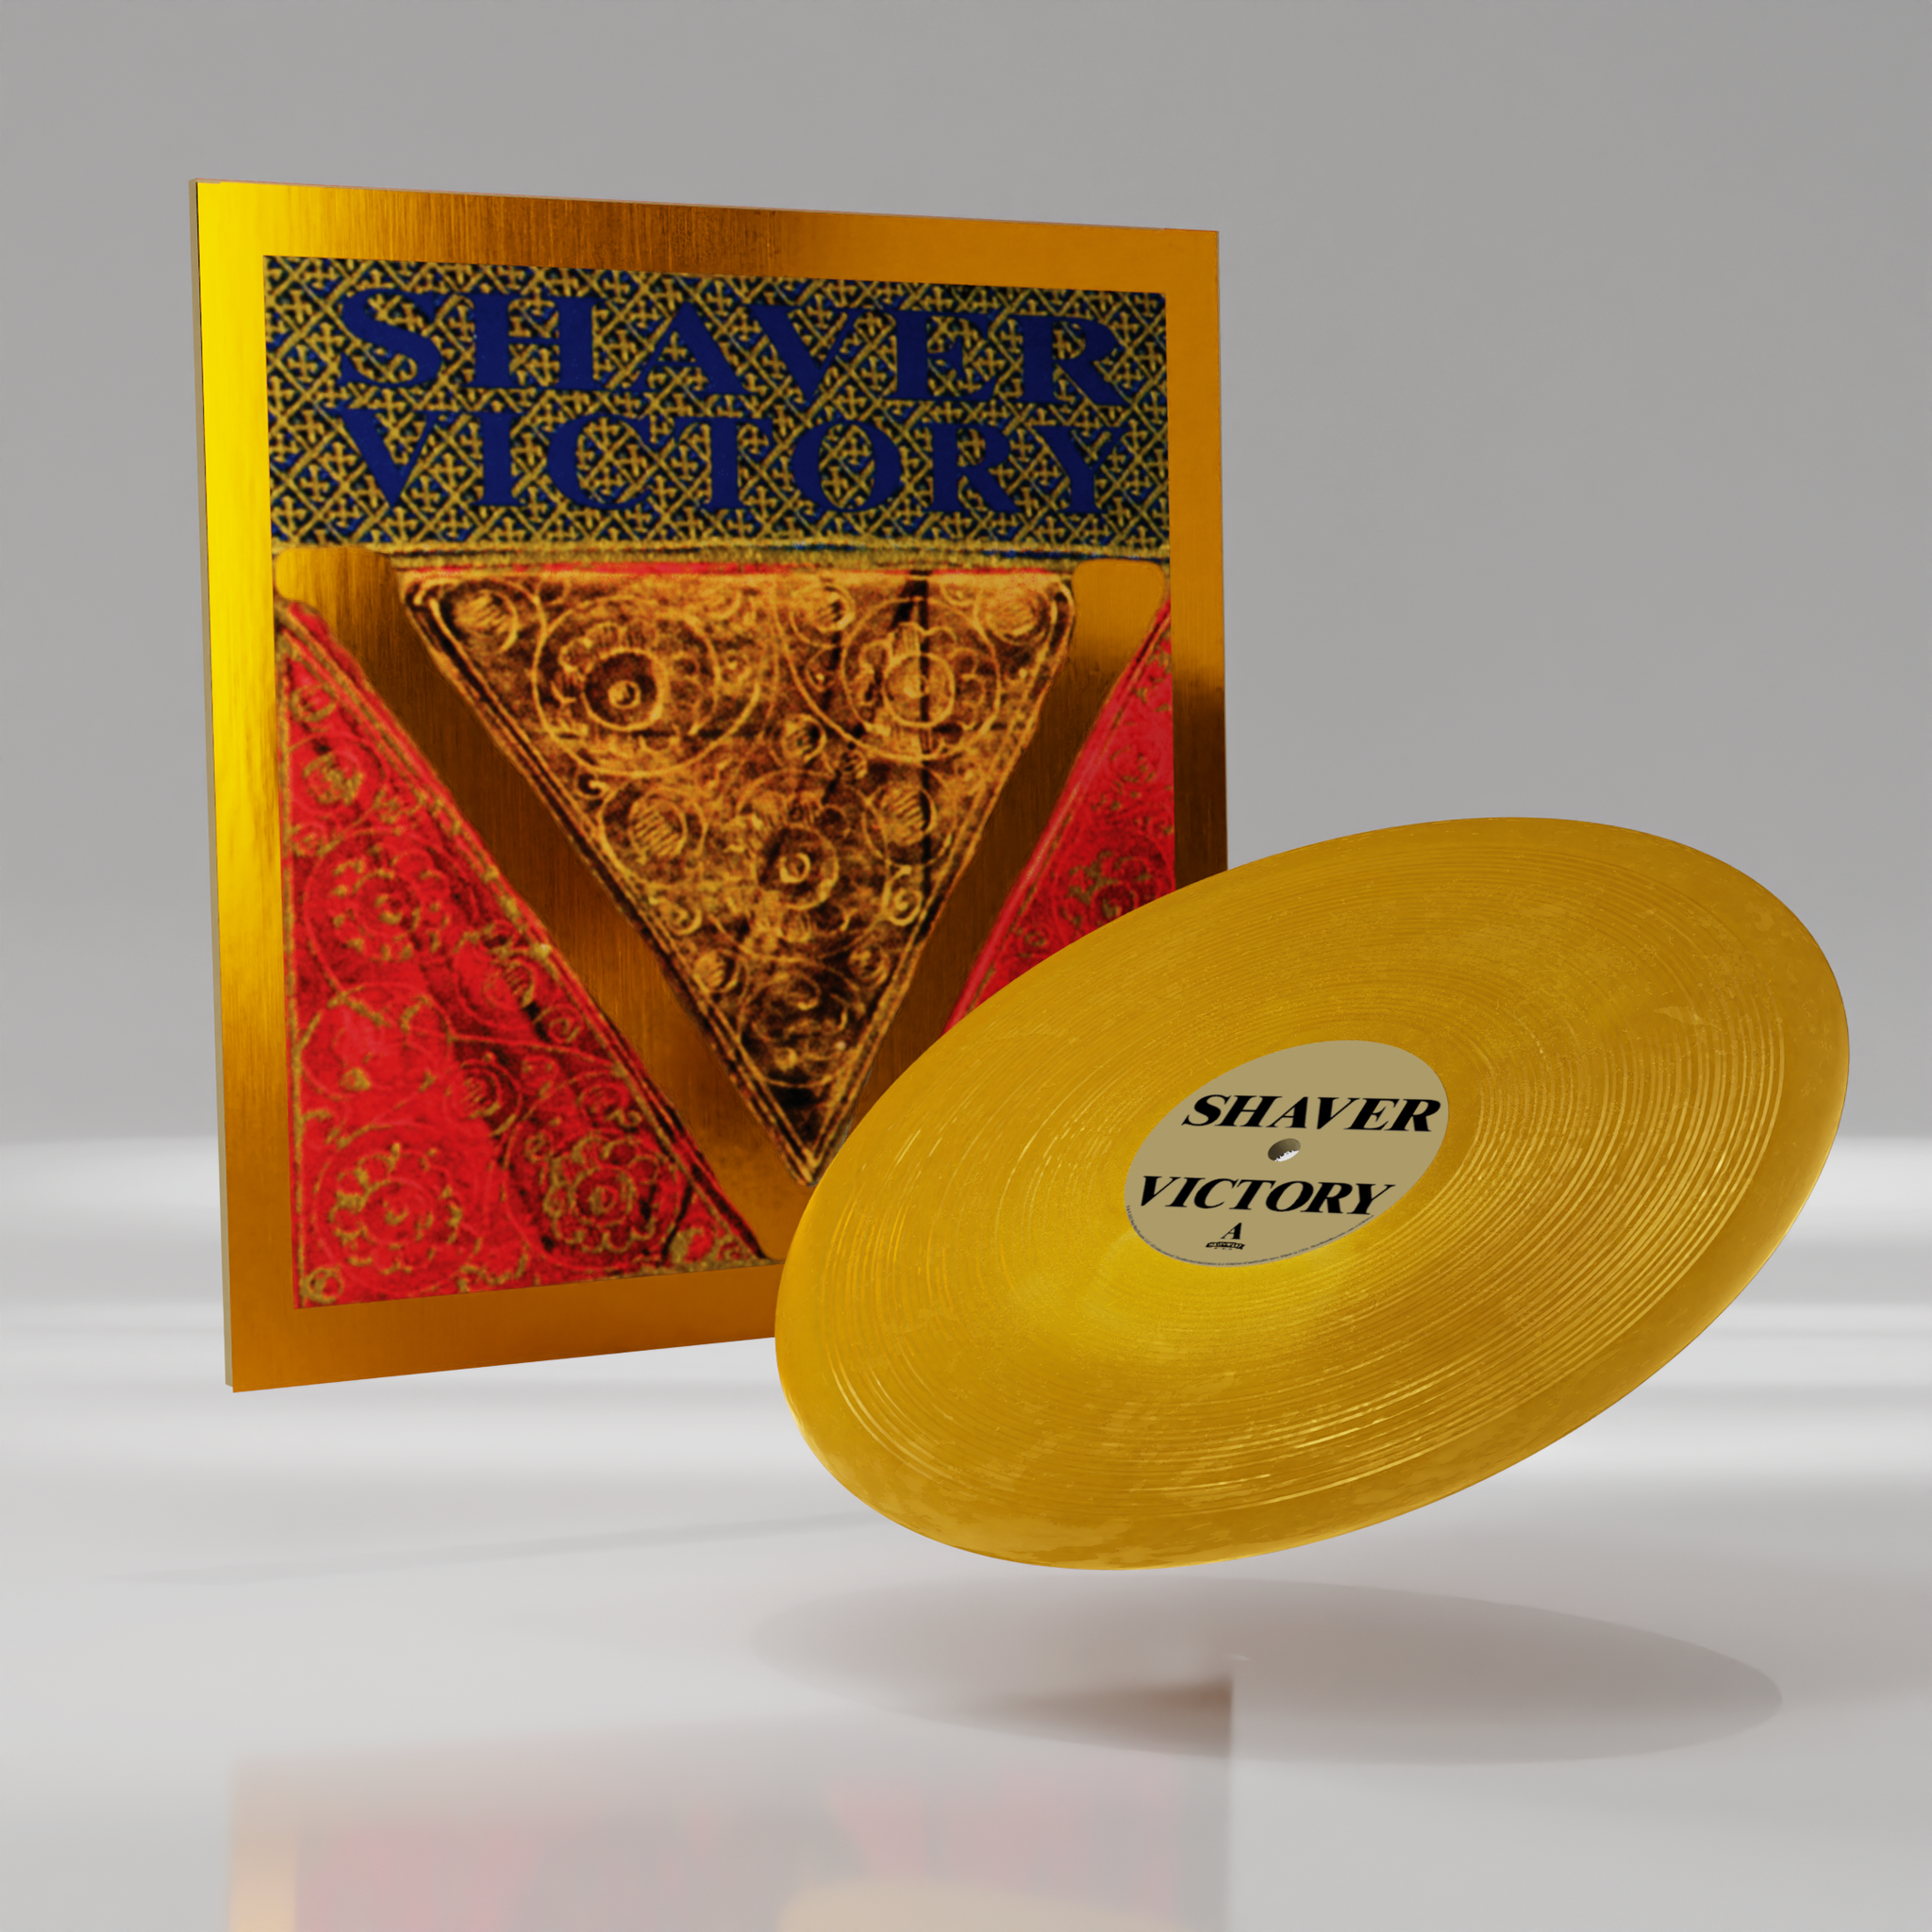 Shaver - Victory [Color Vinyl]